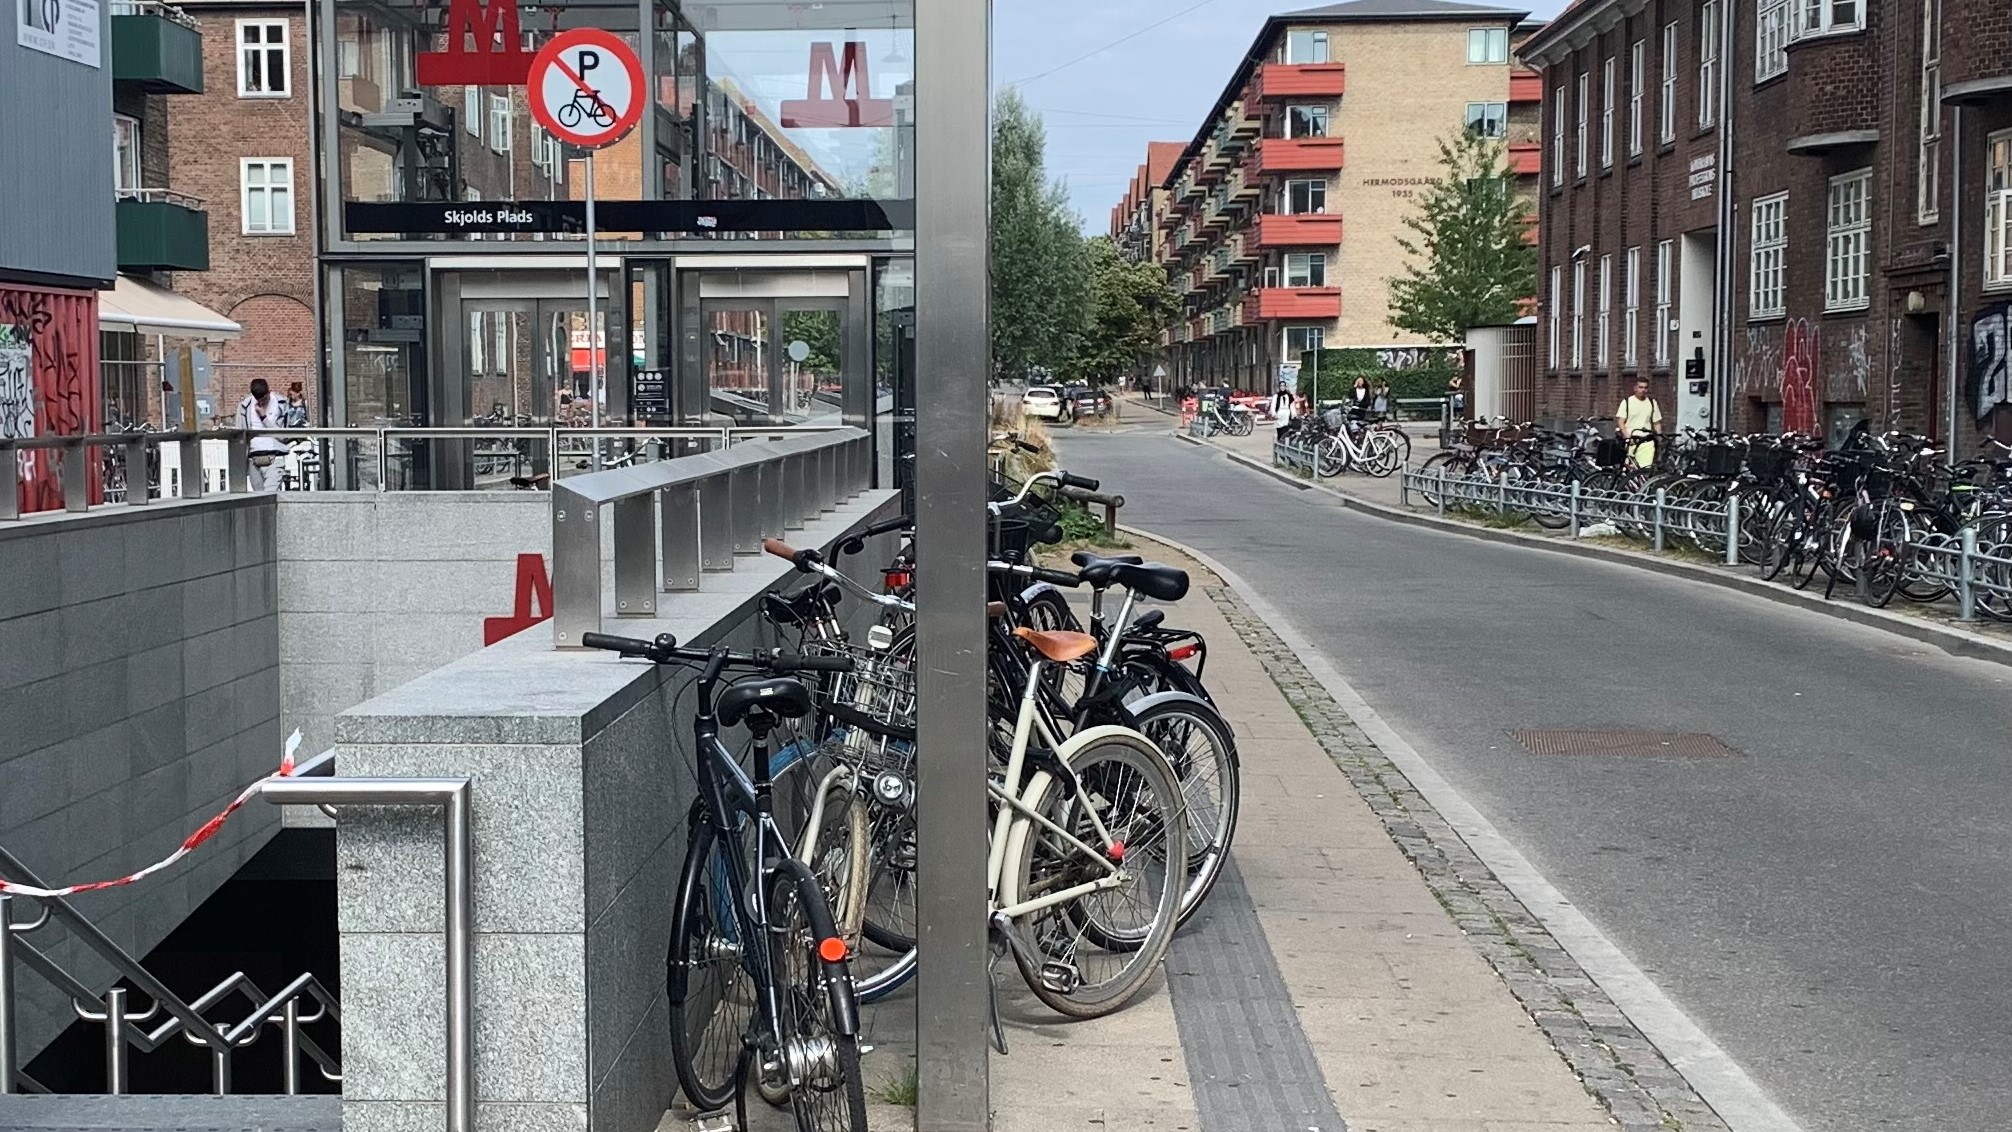 Er cykel blevet flyttet? | Københavns Kommunes hjemmeside